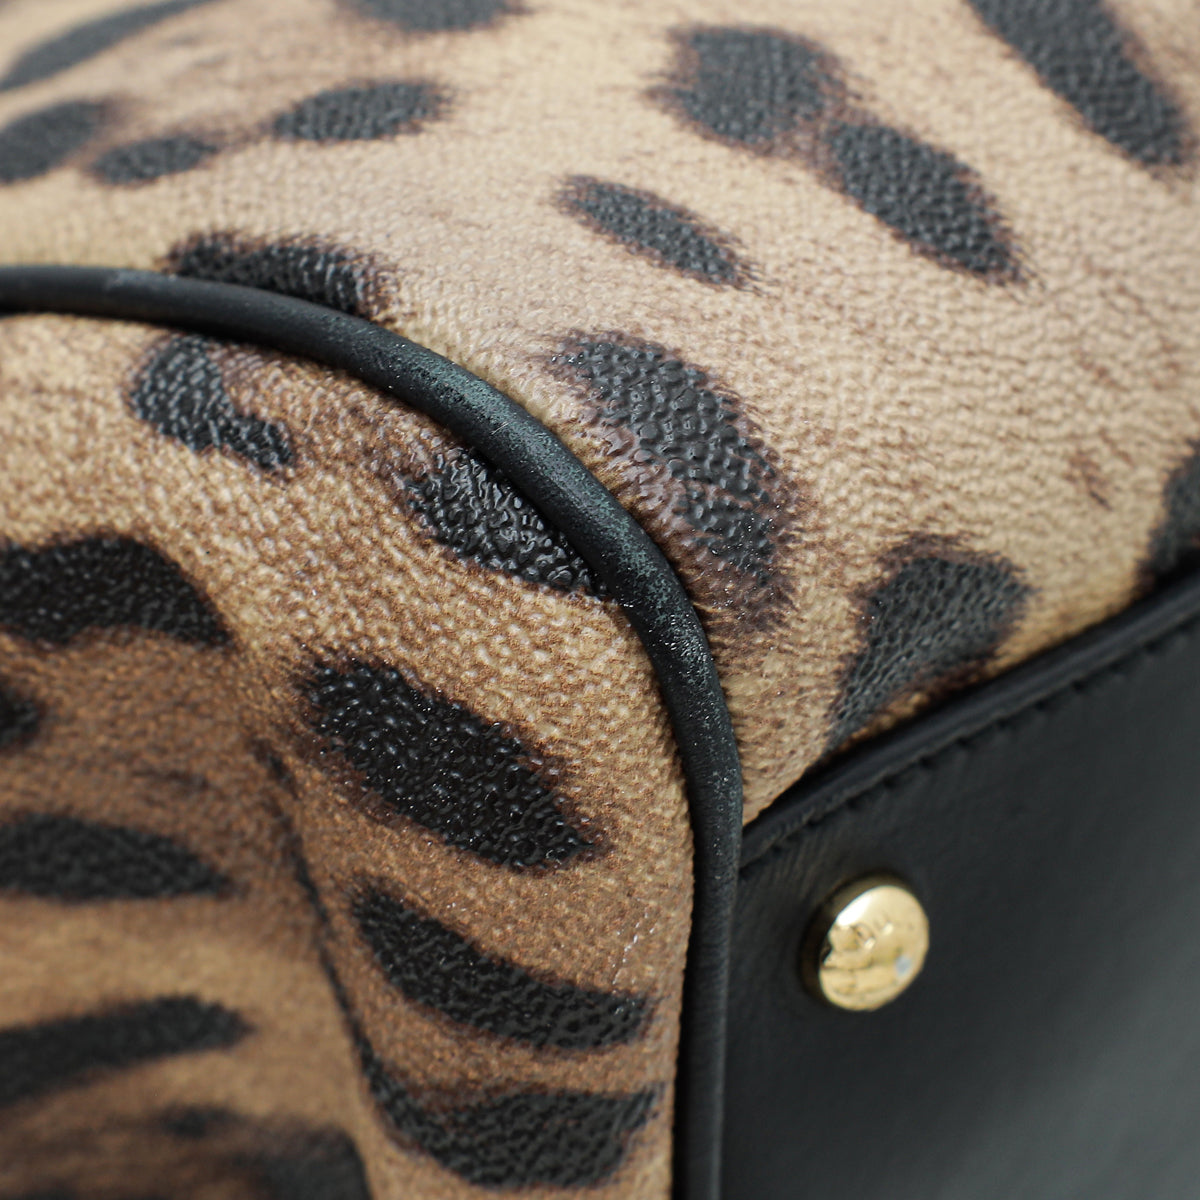 Dolce & Gabbana Bicolor Leopard Print Sicily Large Bag